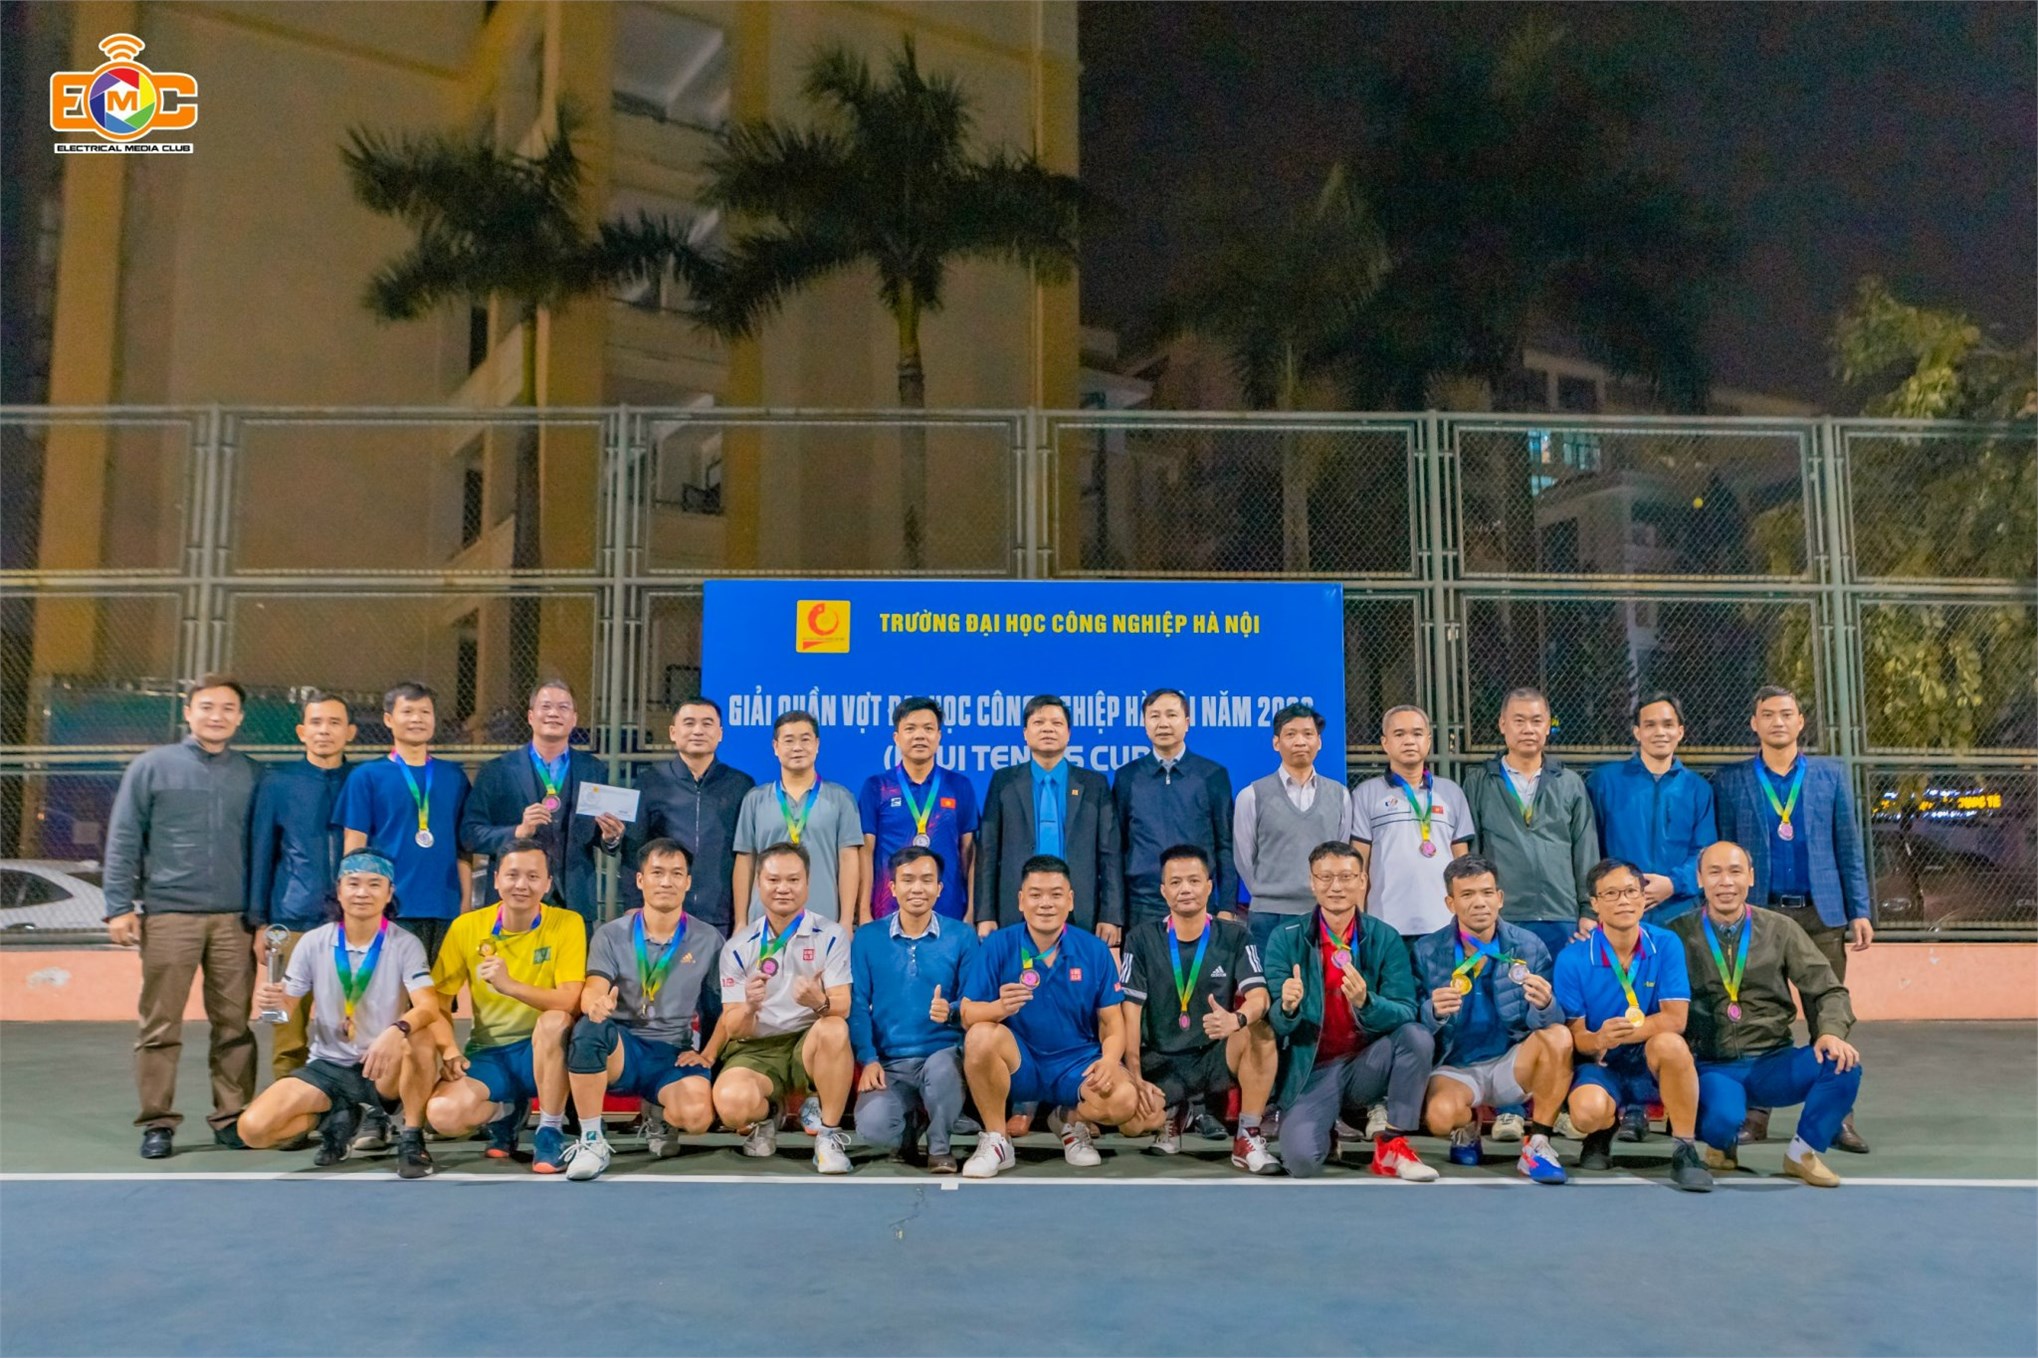 Các Vận động viên Khoa ĐIện tham dự Giải Quần vợt Đại học Công nghiệp Hà Nội năm 2023